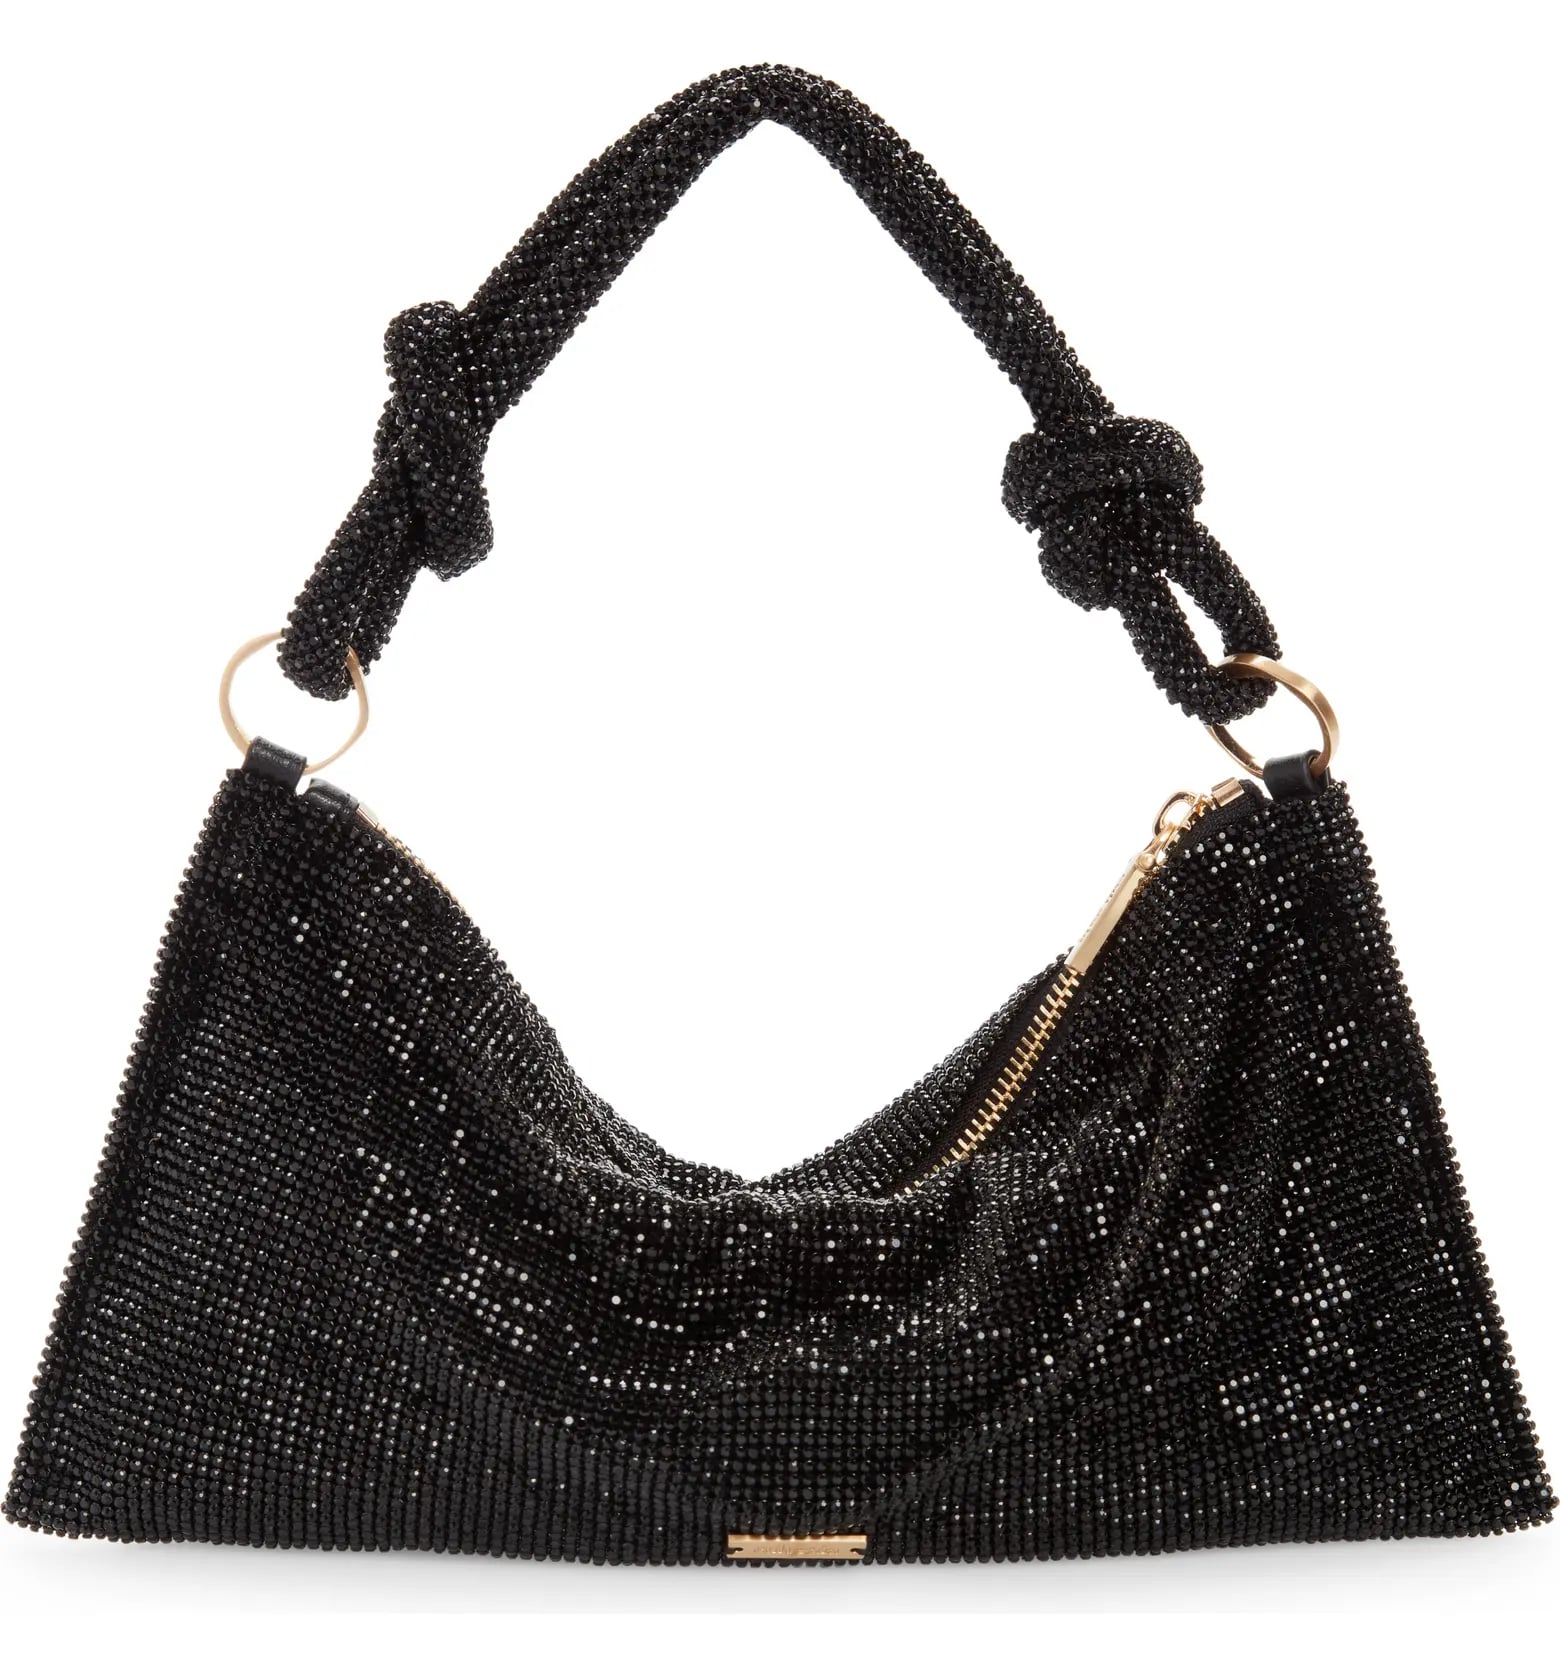 Sequin Clutch Black Vintage Bags, Handbags & Cases for sale